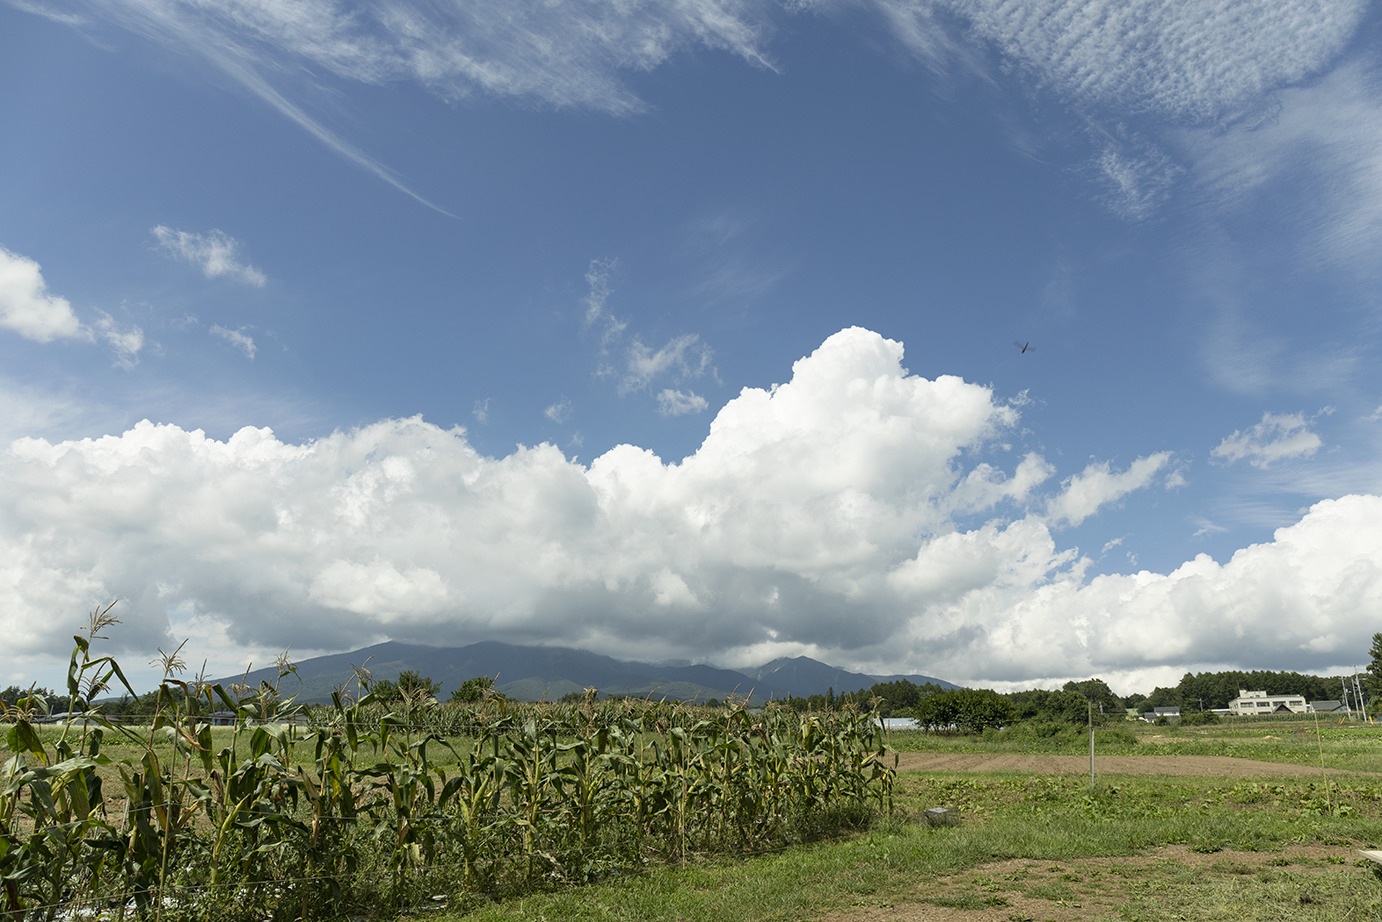 日照時間が日本一といわれる農耕地帯が広がる。